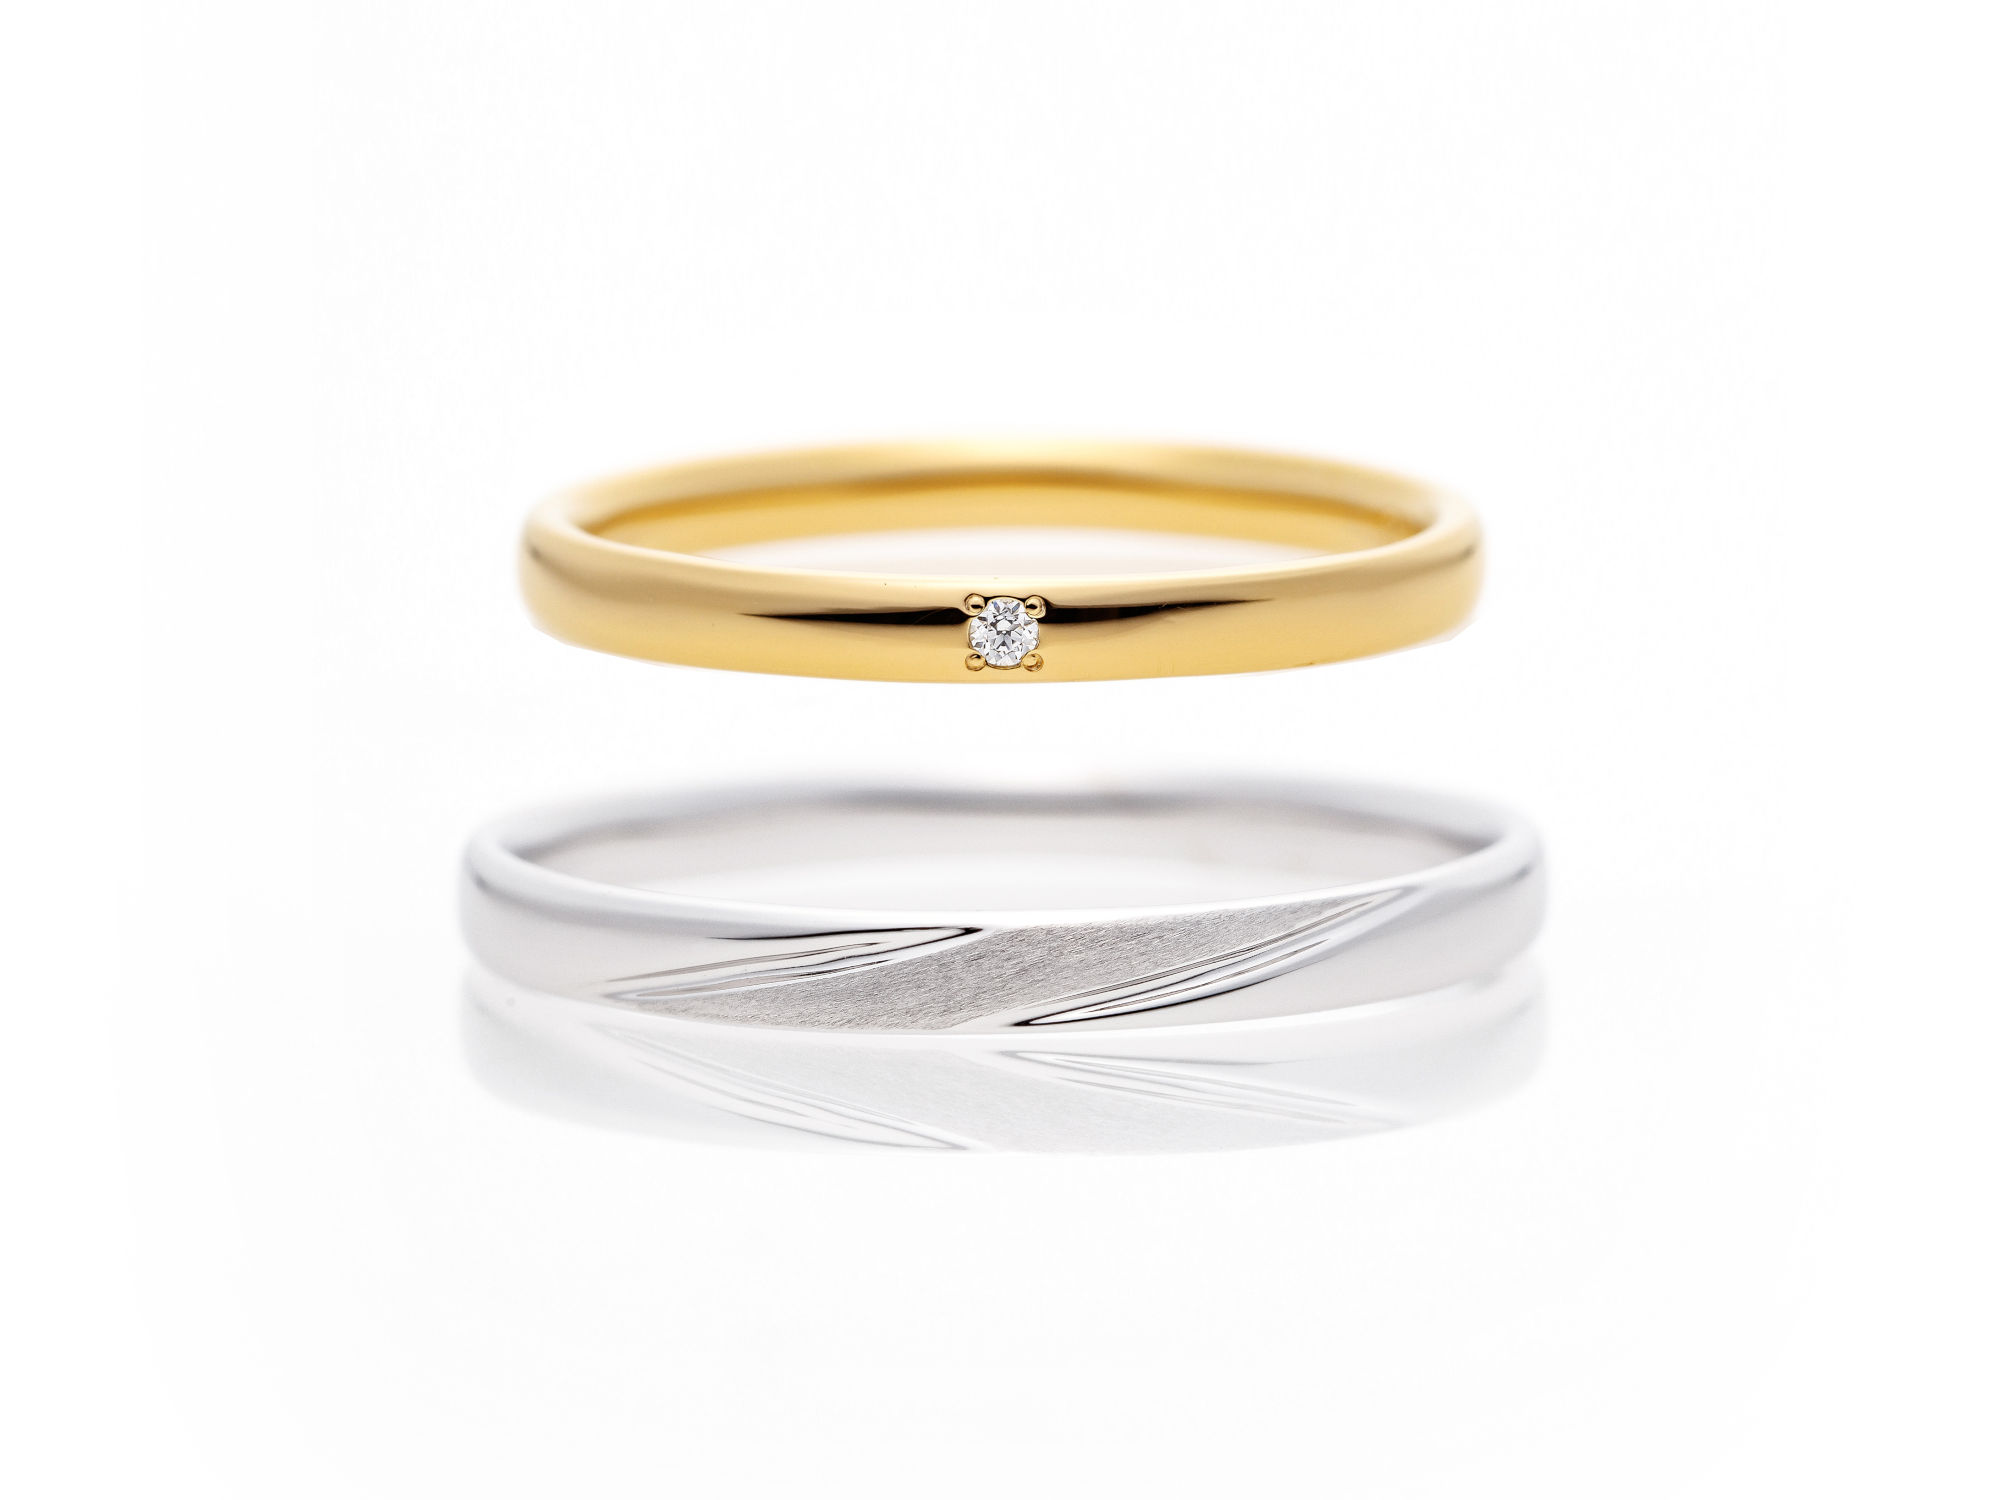 Sainte Couture 結婚指輪